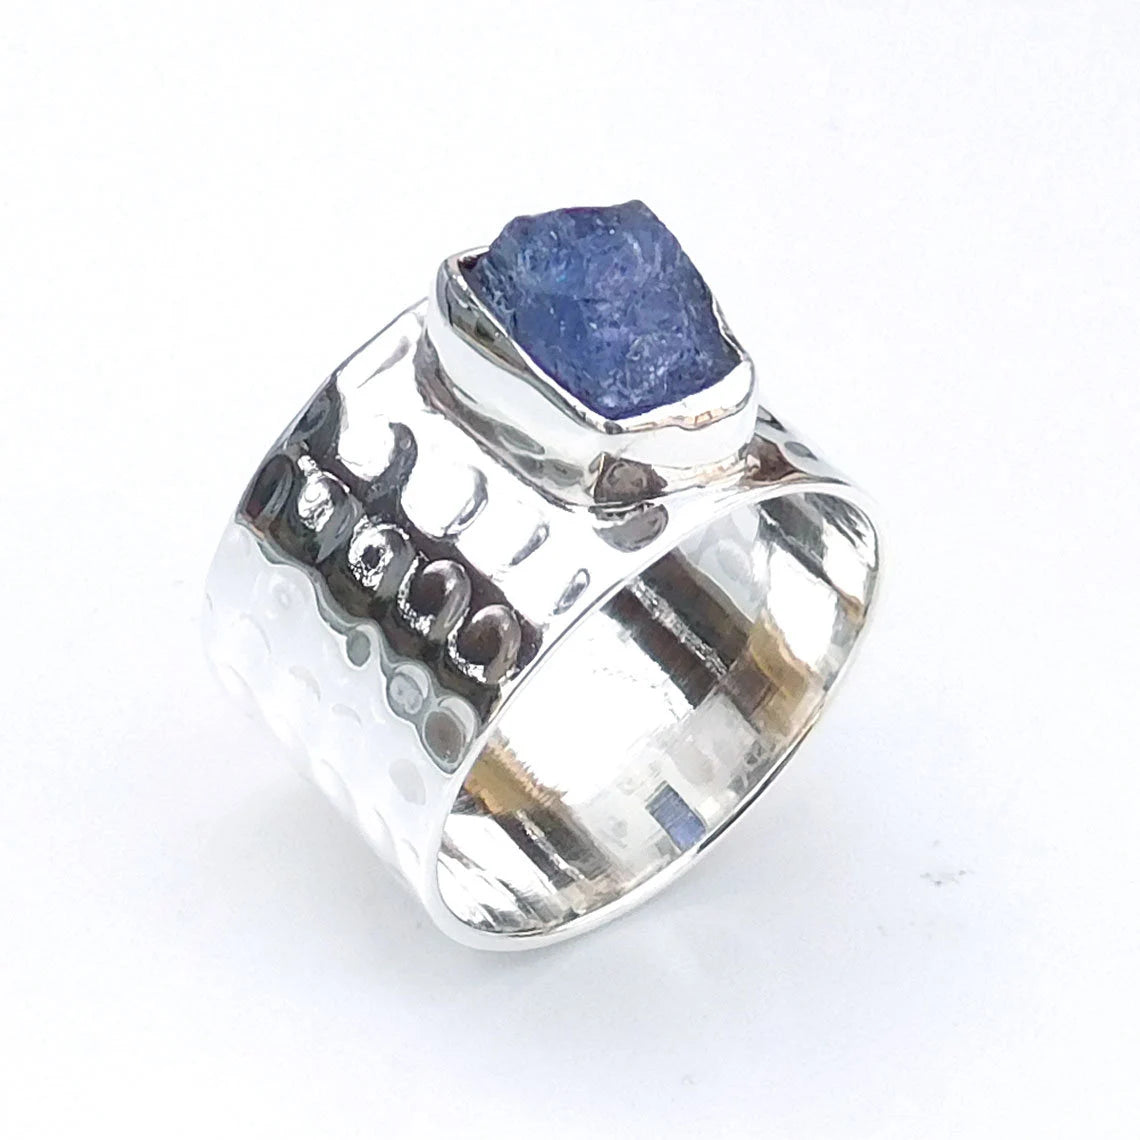 Bred sølvring med blå rå Tanzanit sten, 48